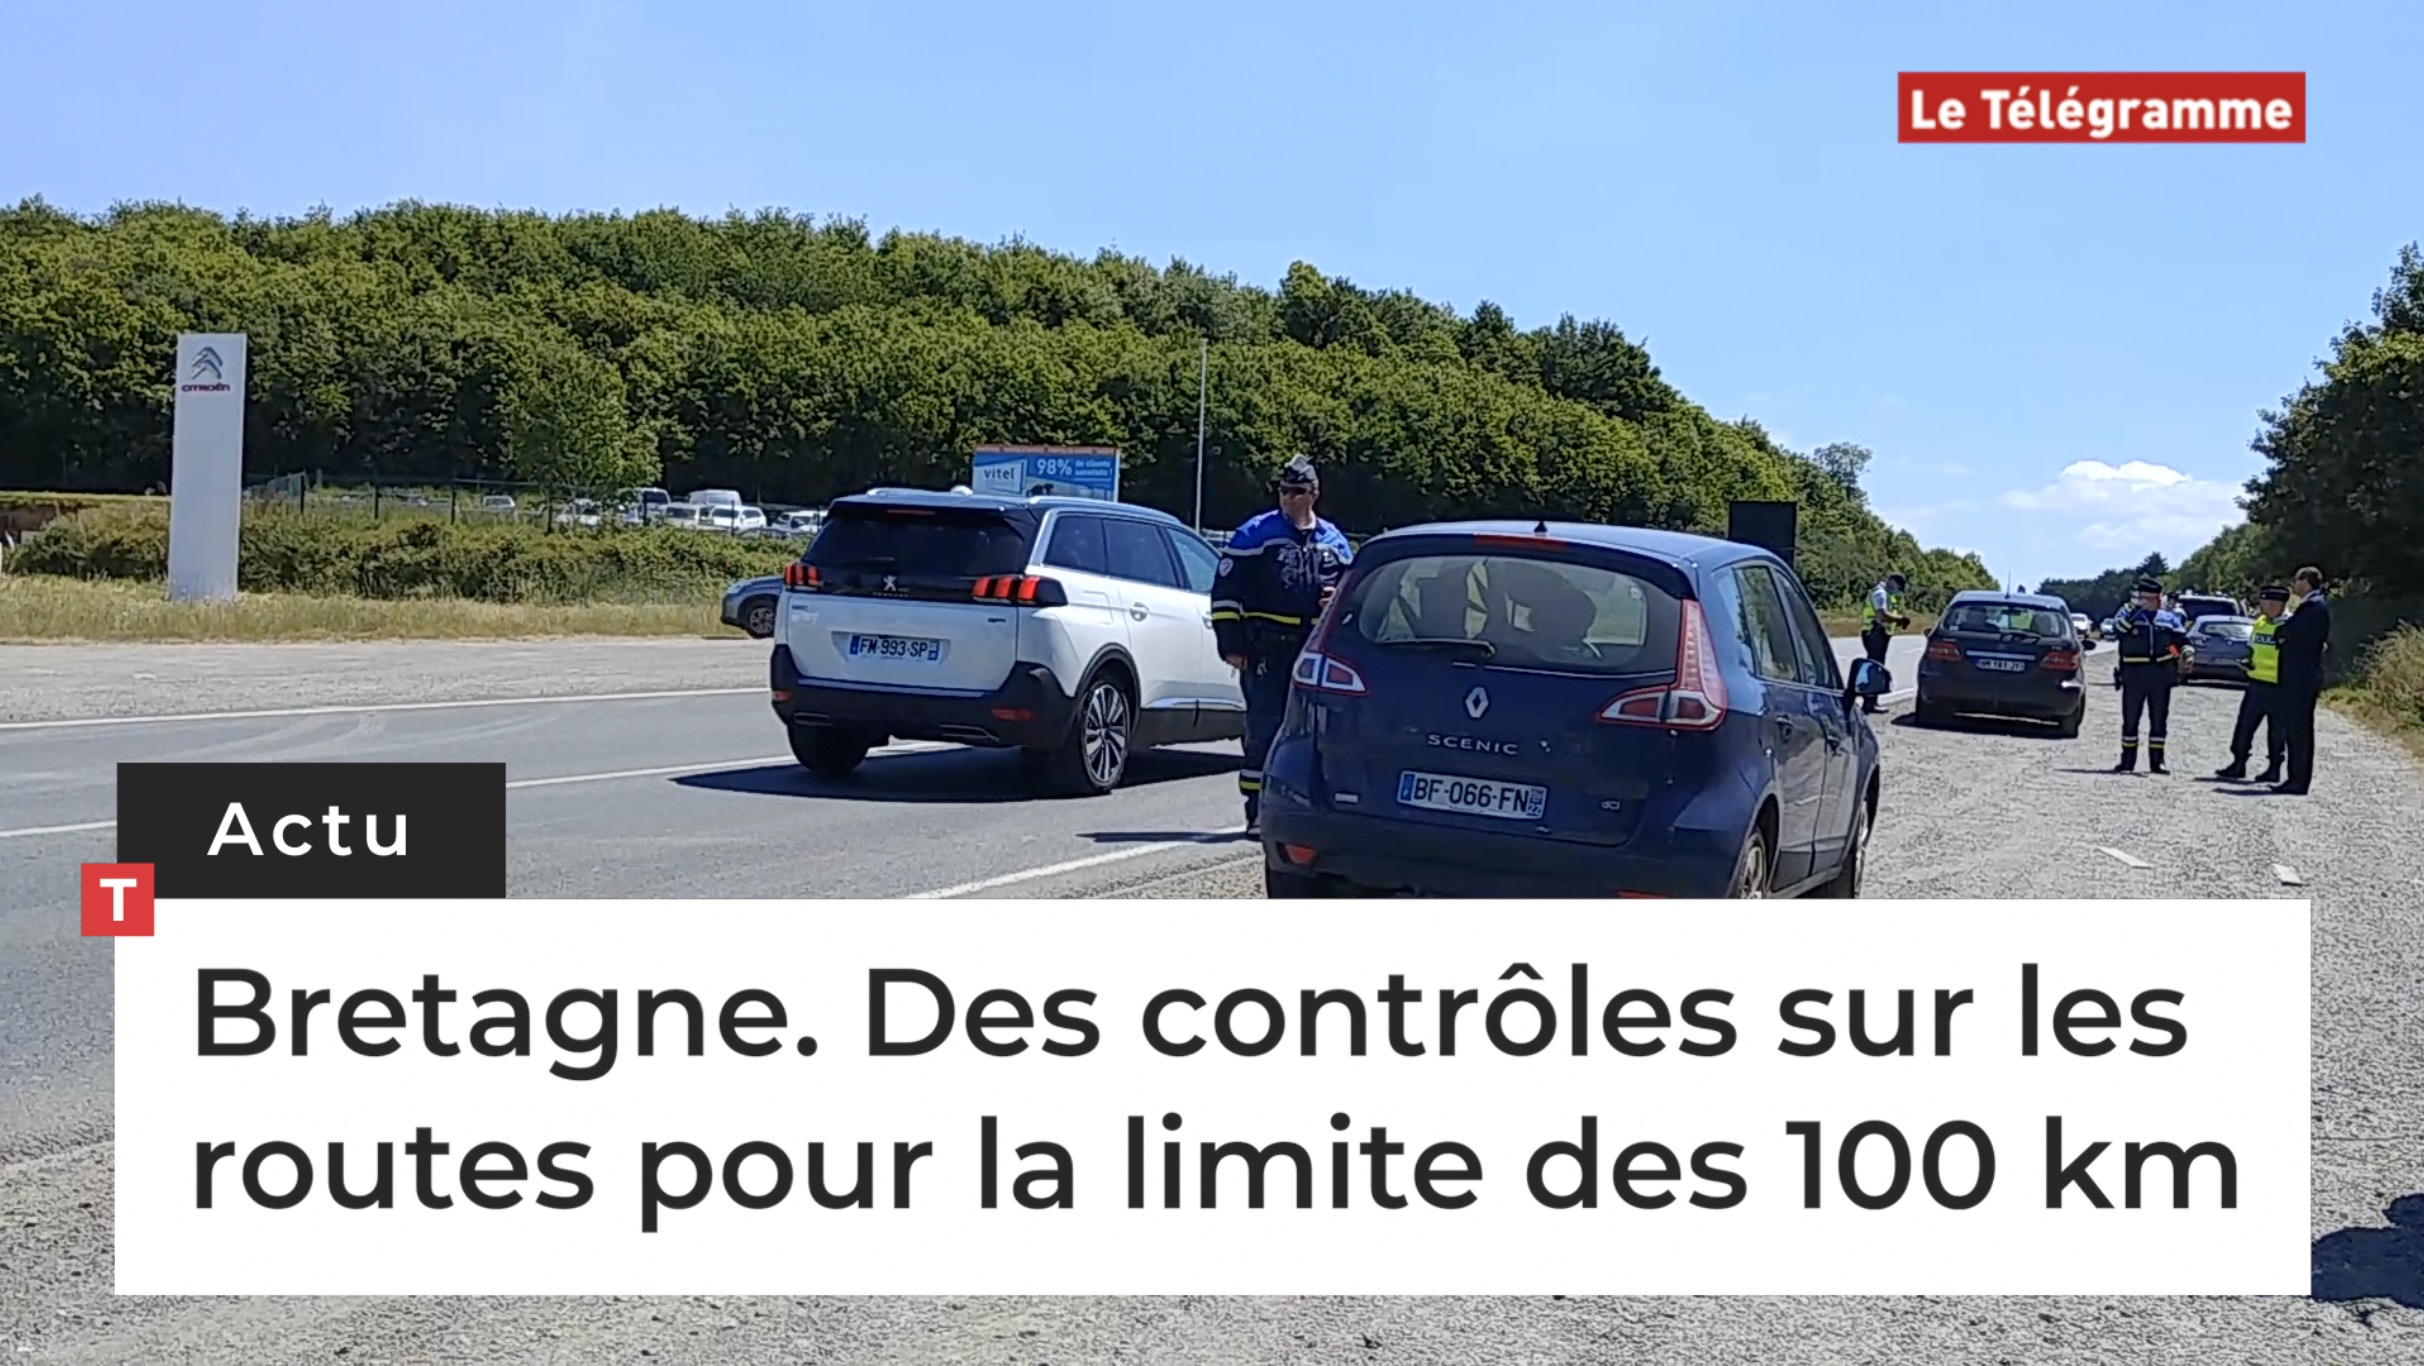 Bretagne. Des contrôles sur les routes pour la limite des 100 km (Le Télégramme)